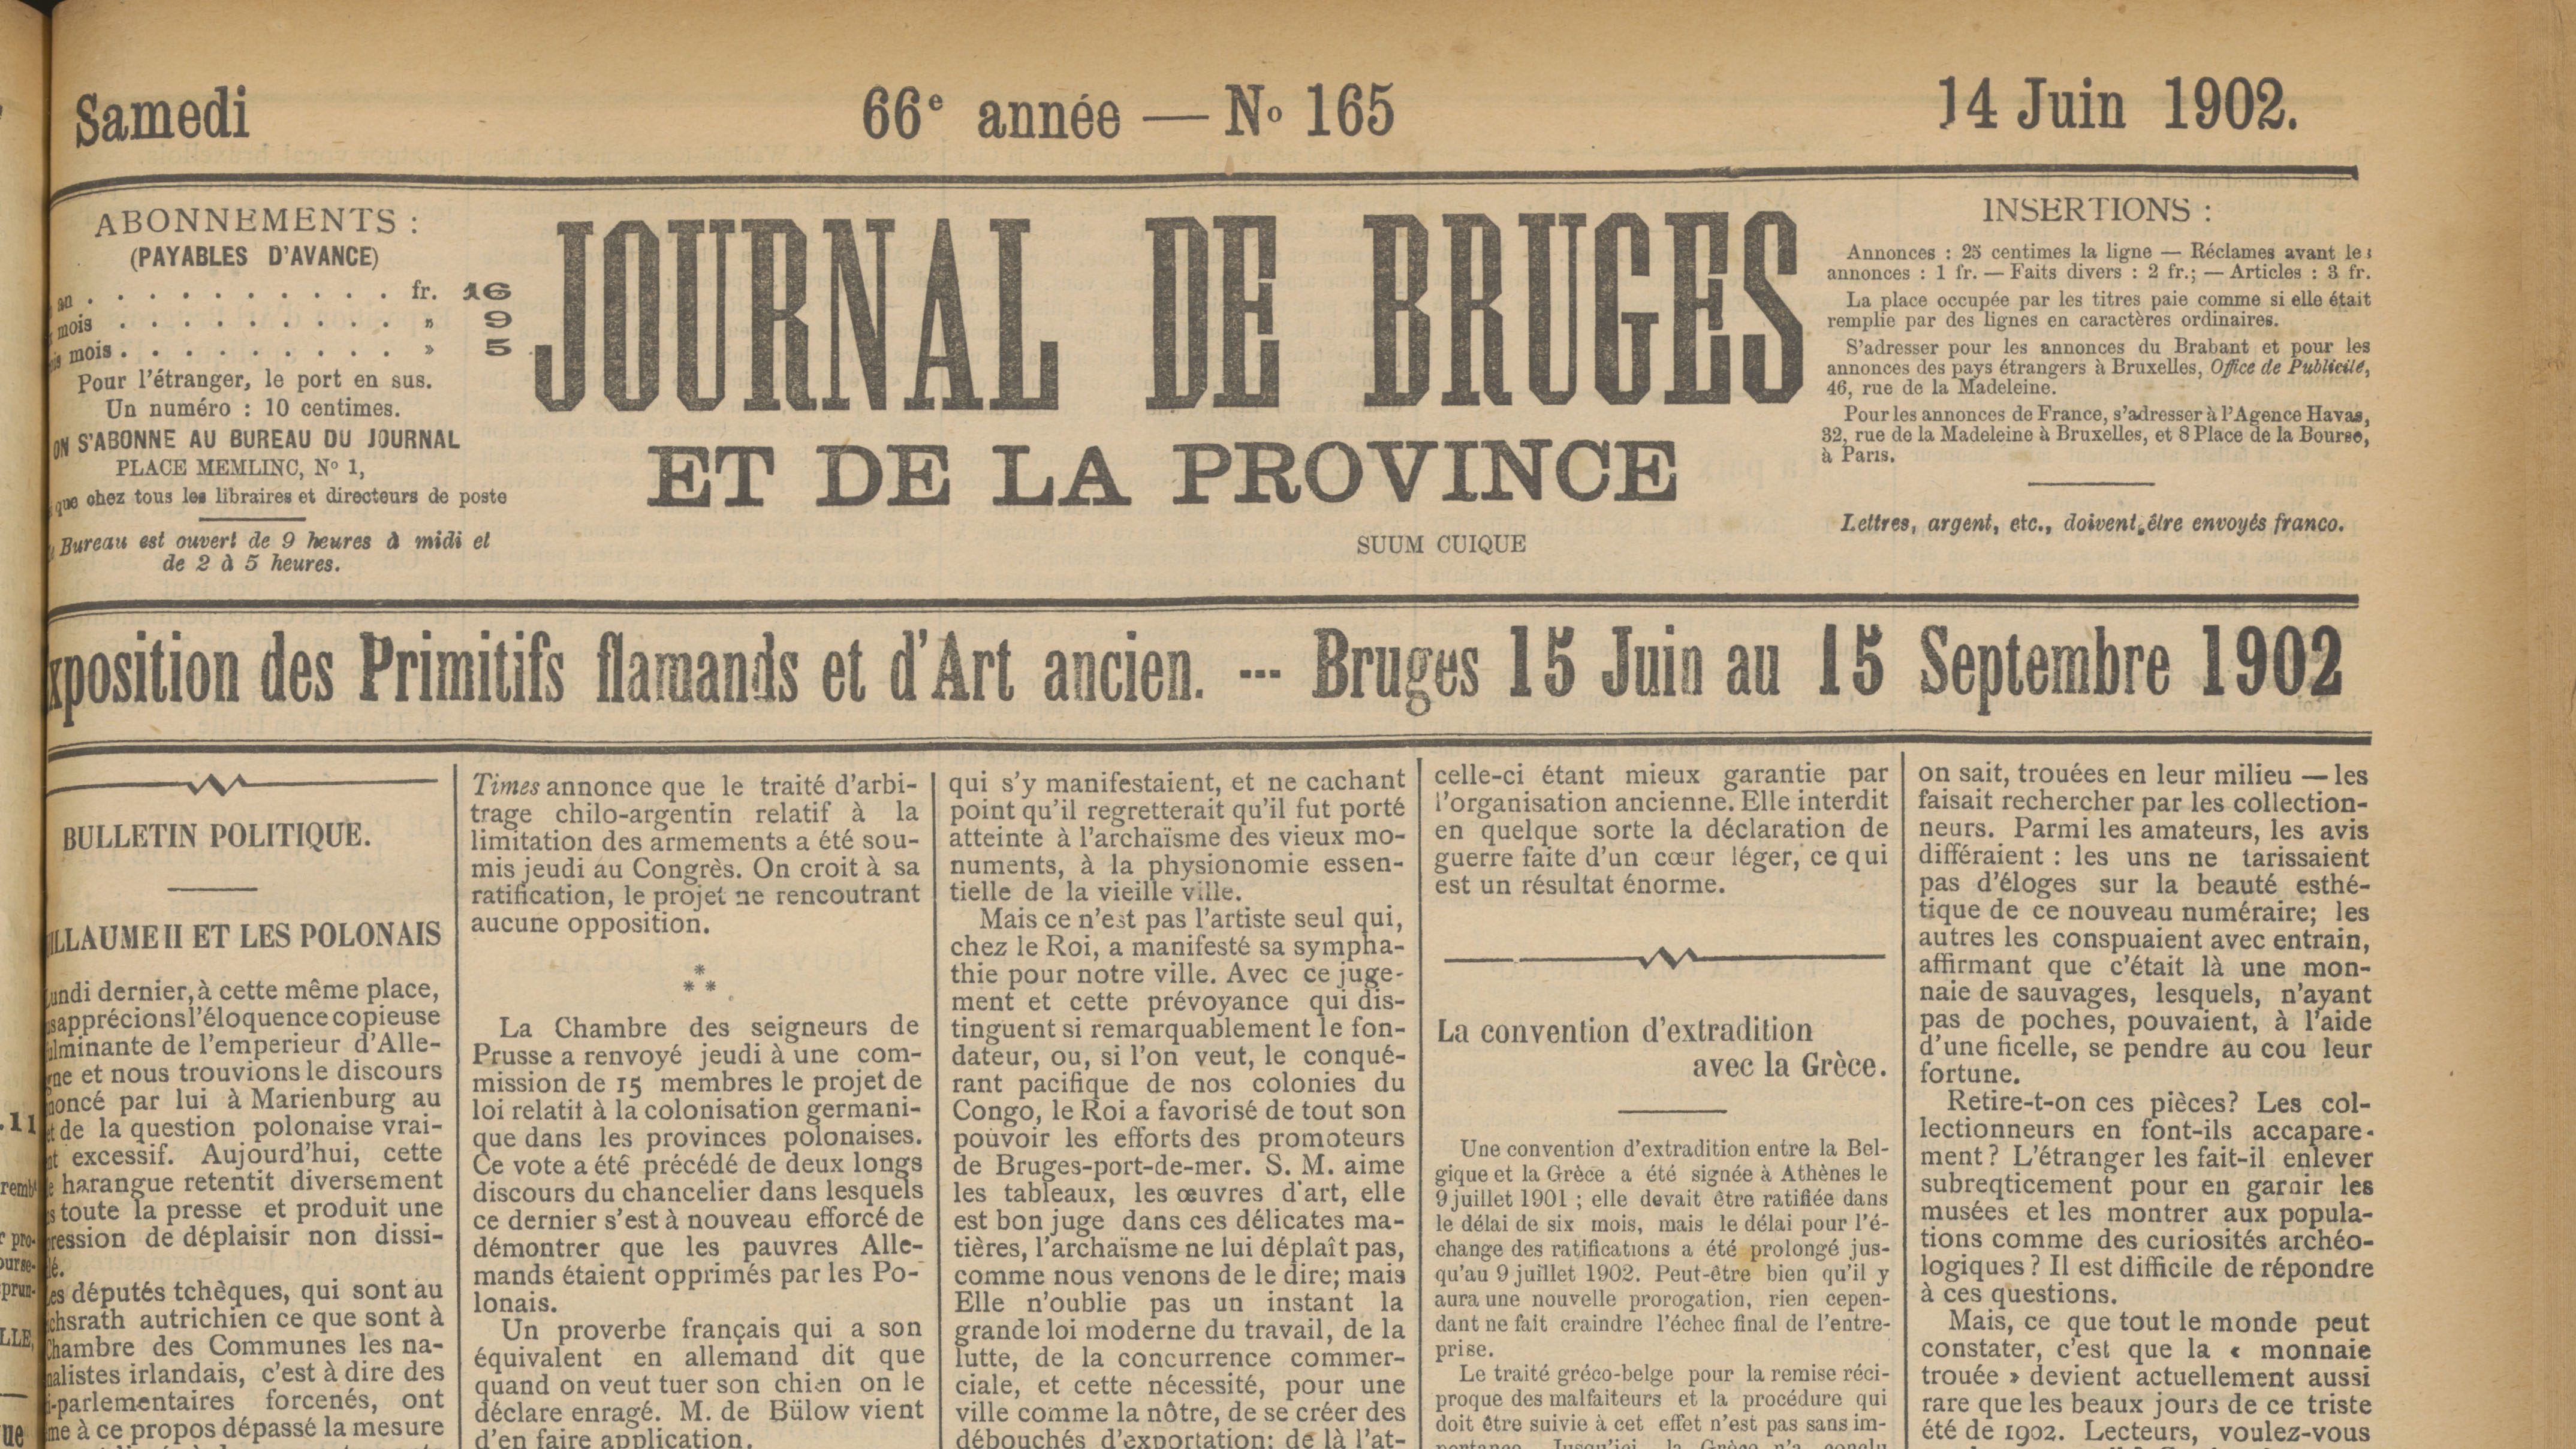 Detail uit de krant Journal de Bruges uit 14 juni 1902 met als titel: Exposition des Primitifs flamands et d'Art ancien, over de opening van de tentoonstelling over de Vlaamse primitieven.